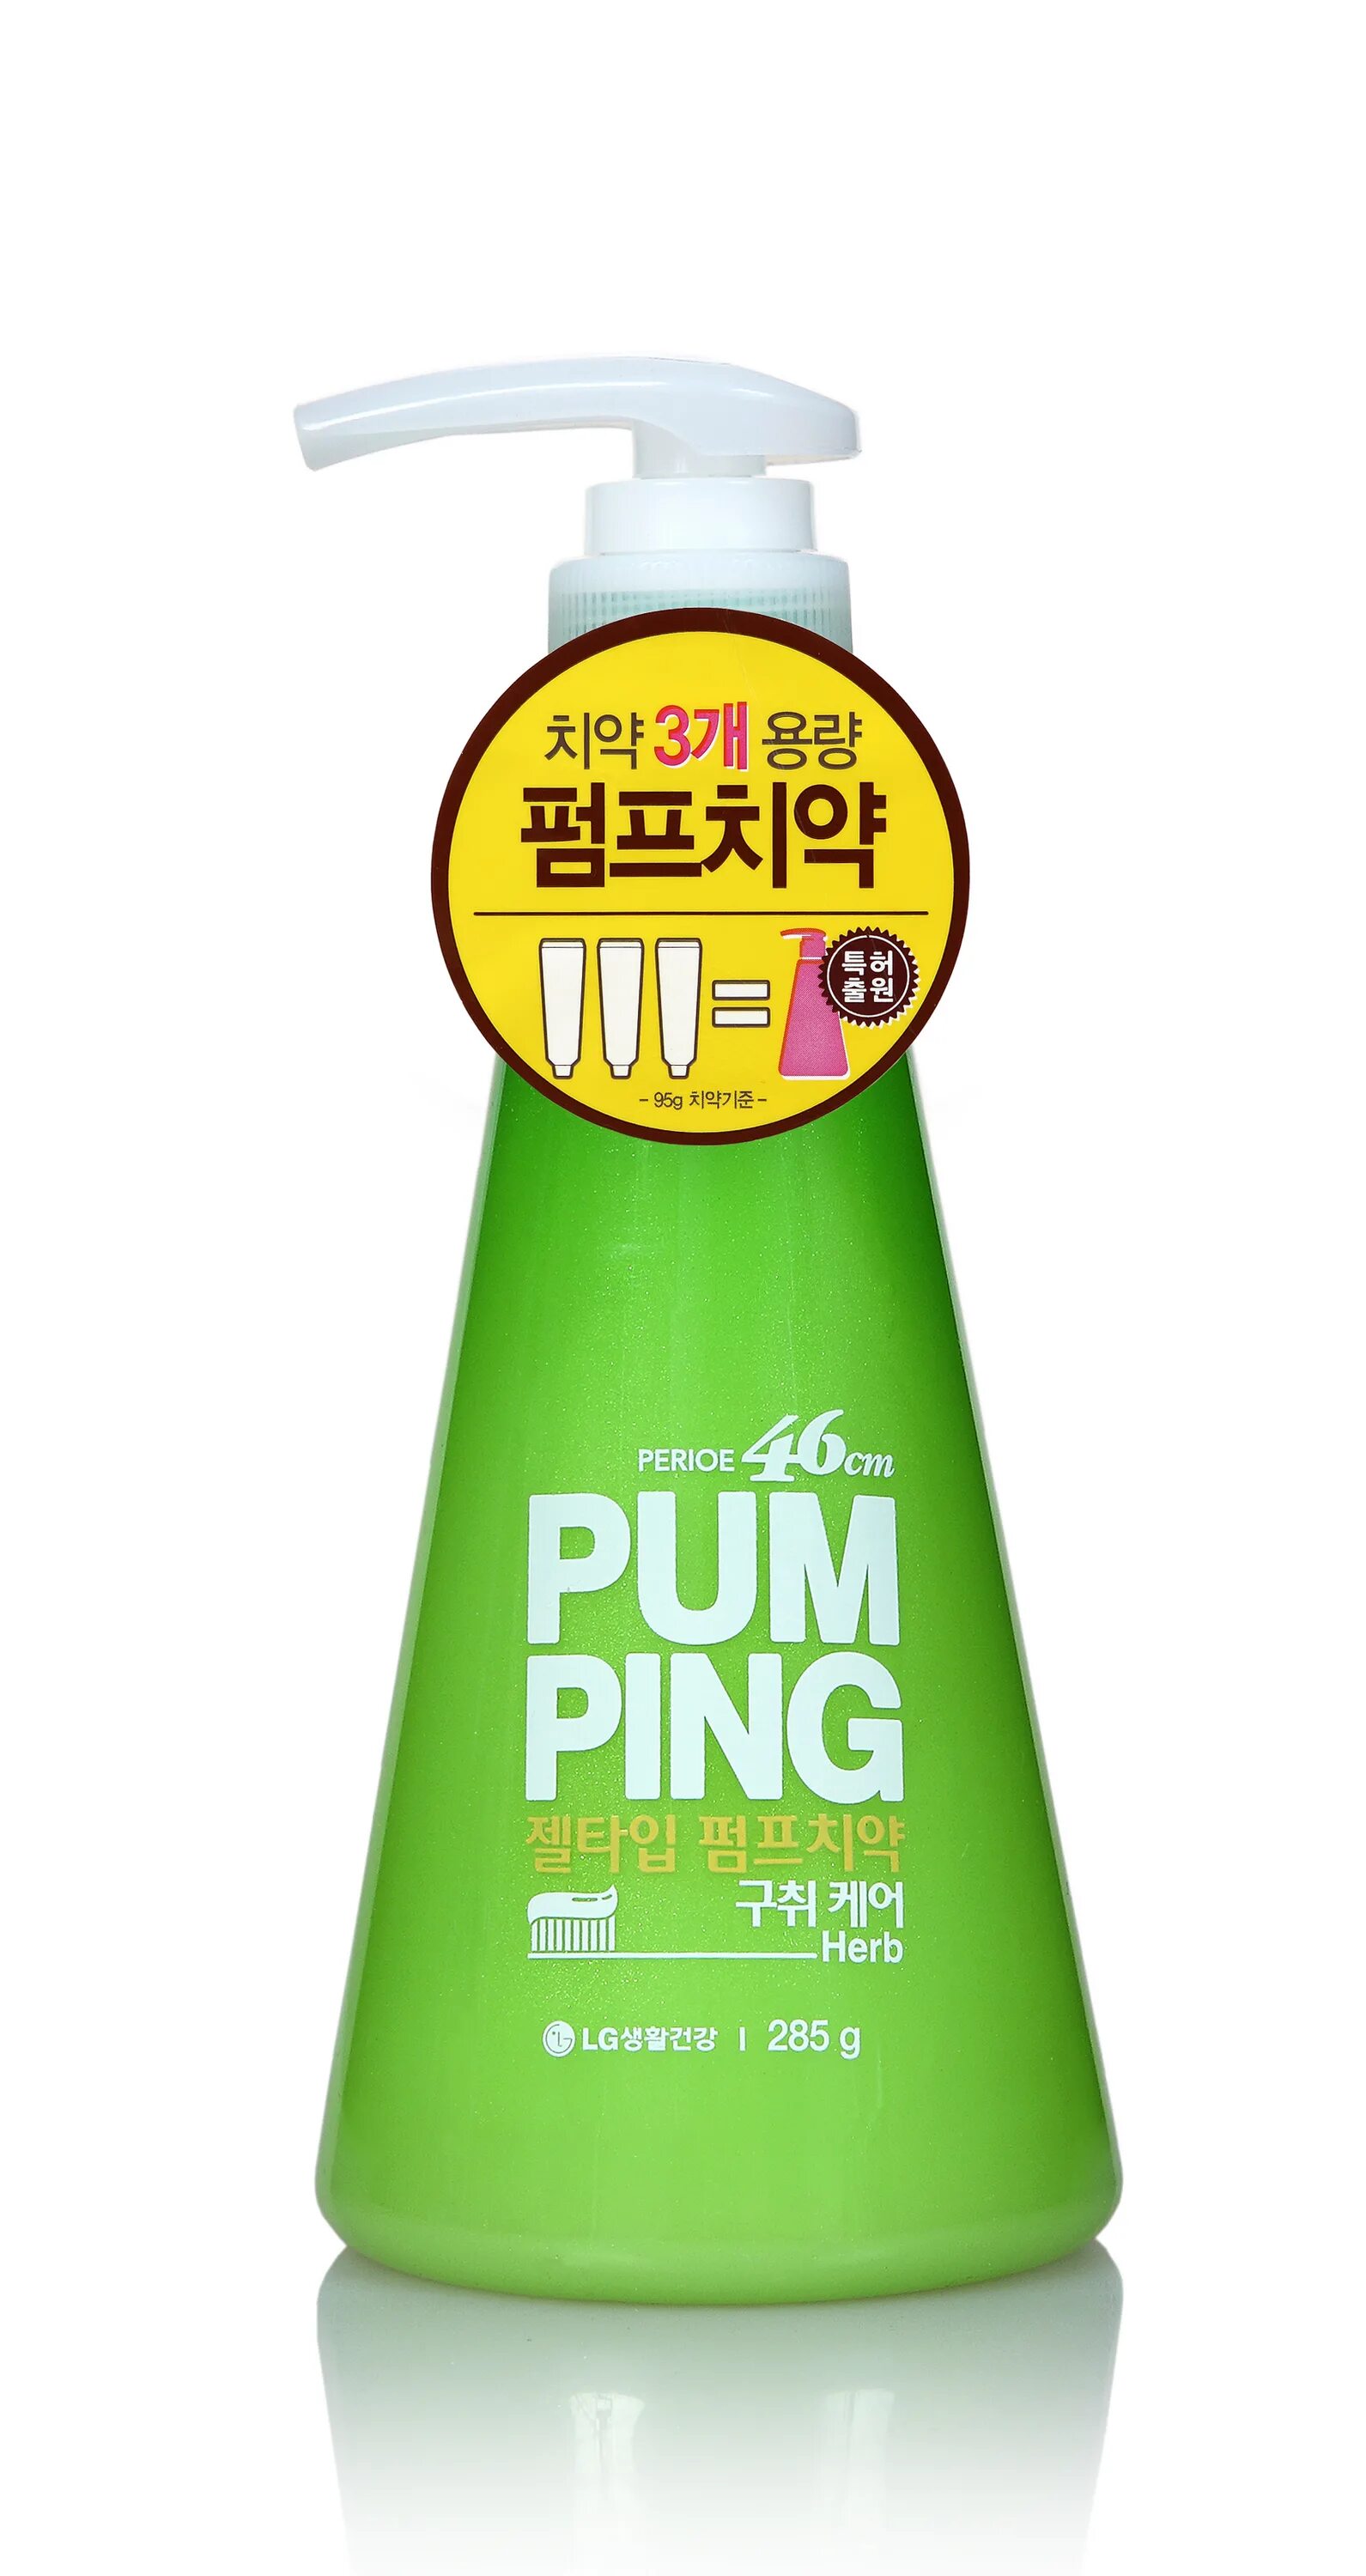 Pumping зубная паста. Корейская зубная паста Bloom с дозатором. Зубная пасты LG Pumping паста. Perioe 46 cm. Корейская зубная паста с дозатором.